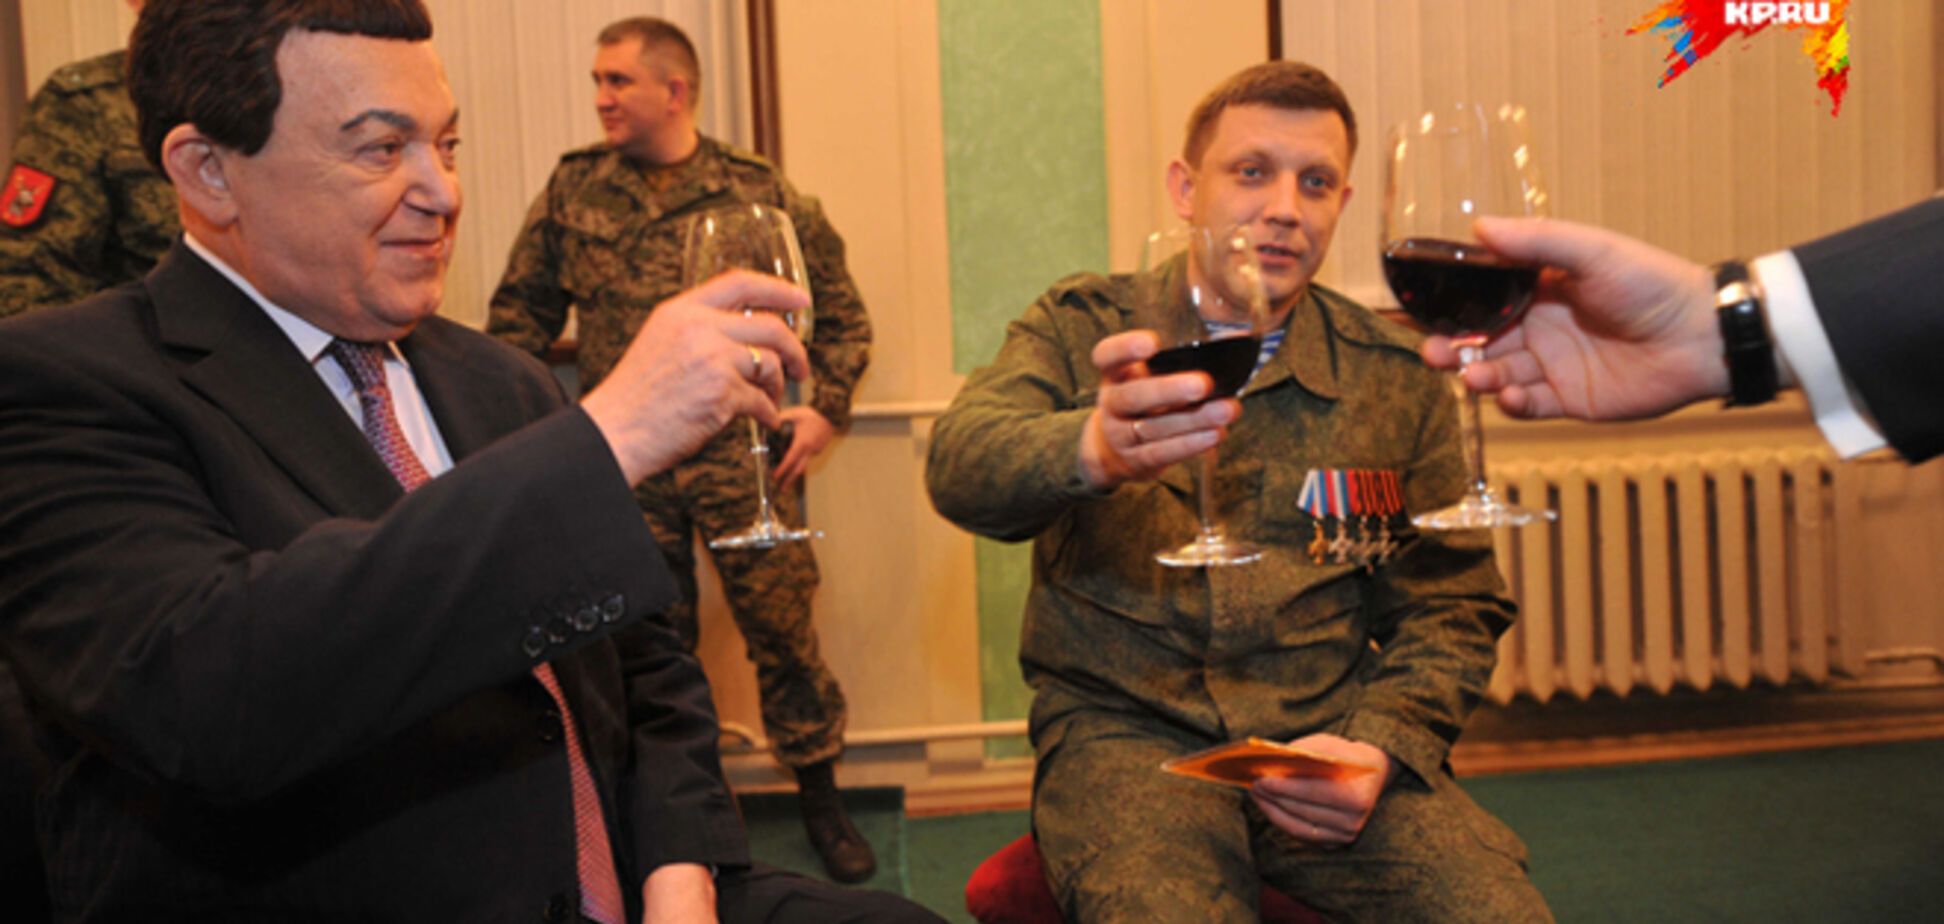 Захарченко выпил с Кобзоном и сравнил его с собакой